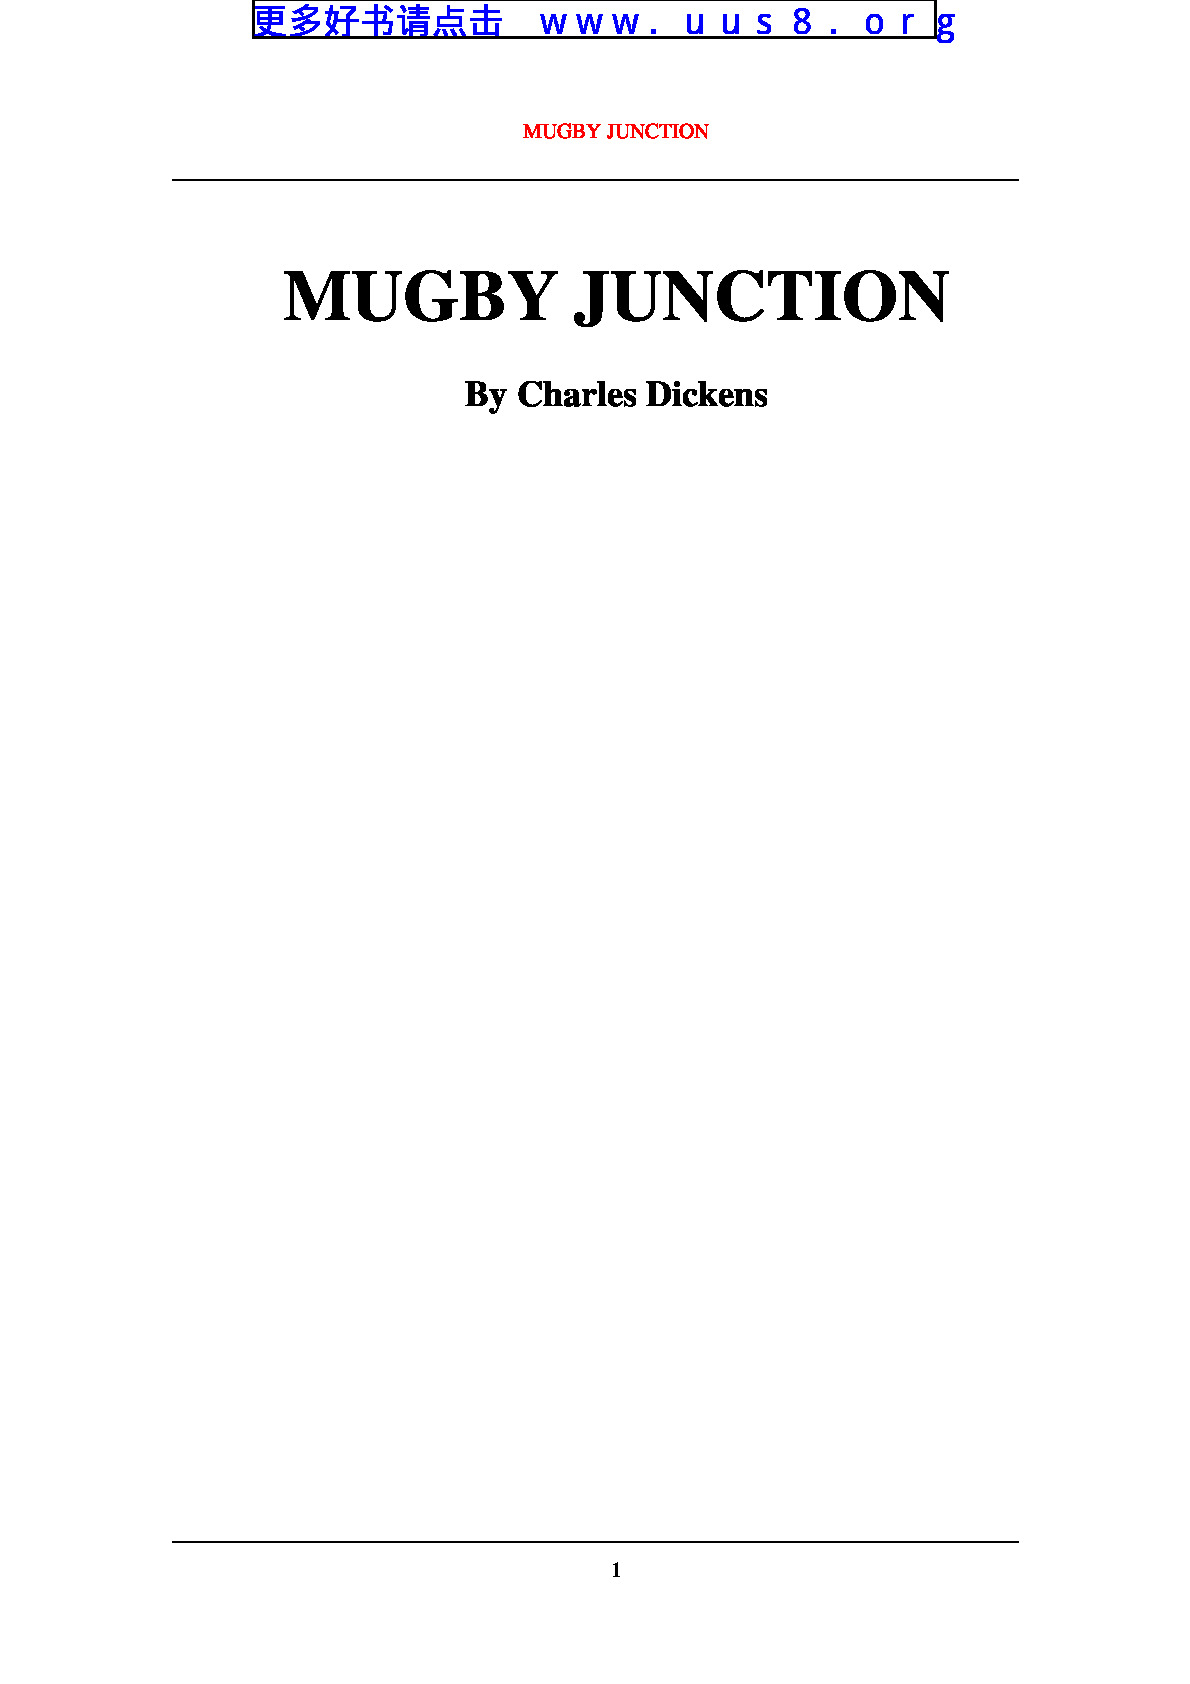 MUGBY_JUNCTION(马格比岔口)